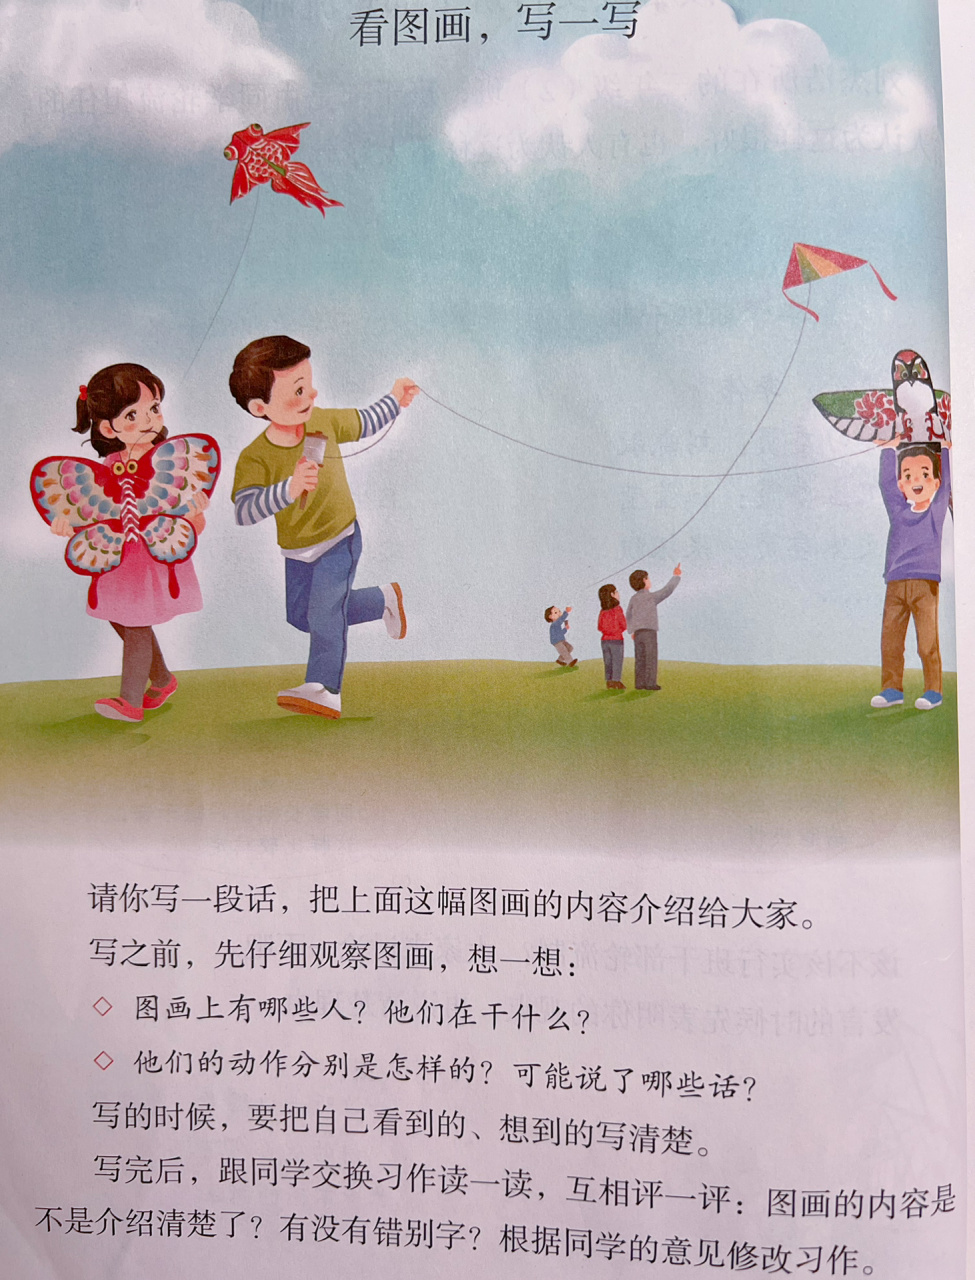 图中3个人放风筝写话图片